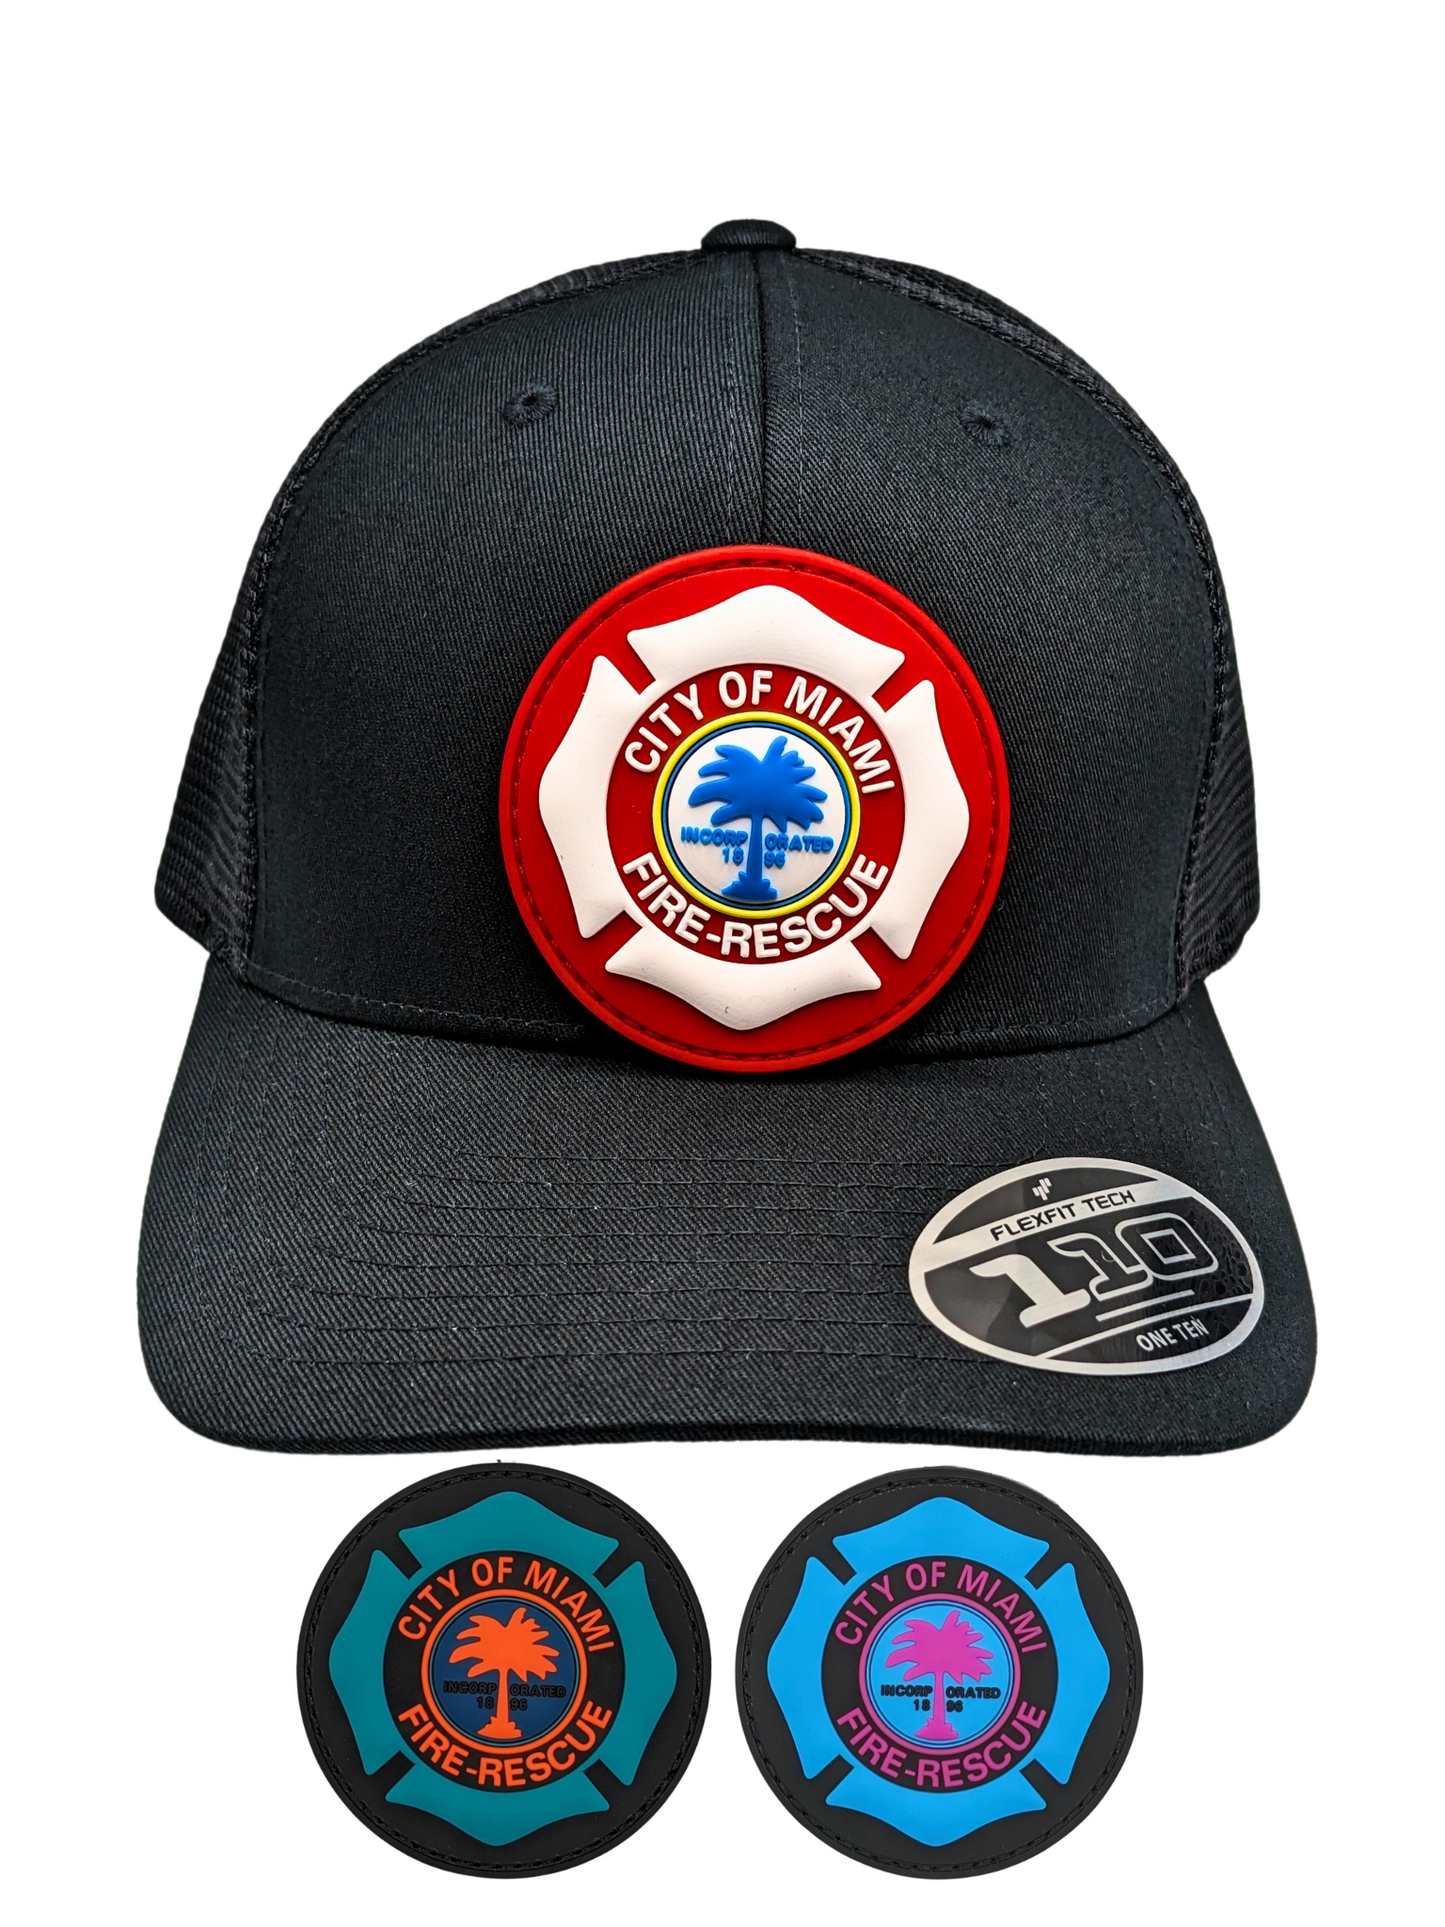 City of Miami Fire Rescue Removable PVC Patch Hat Bundle